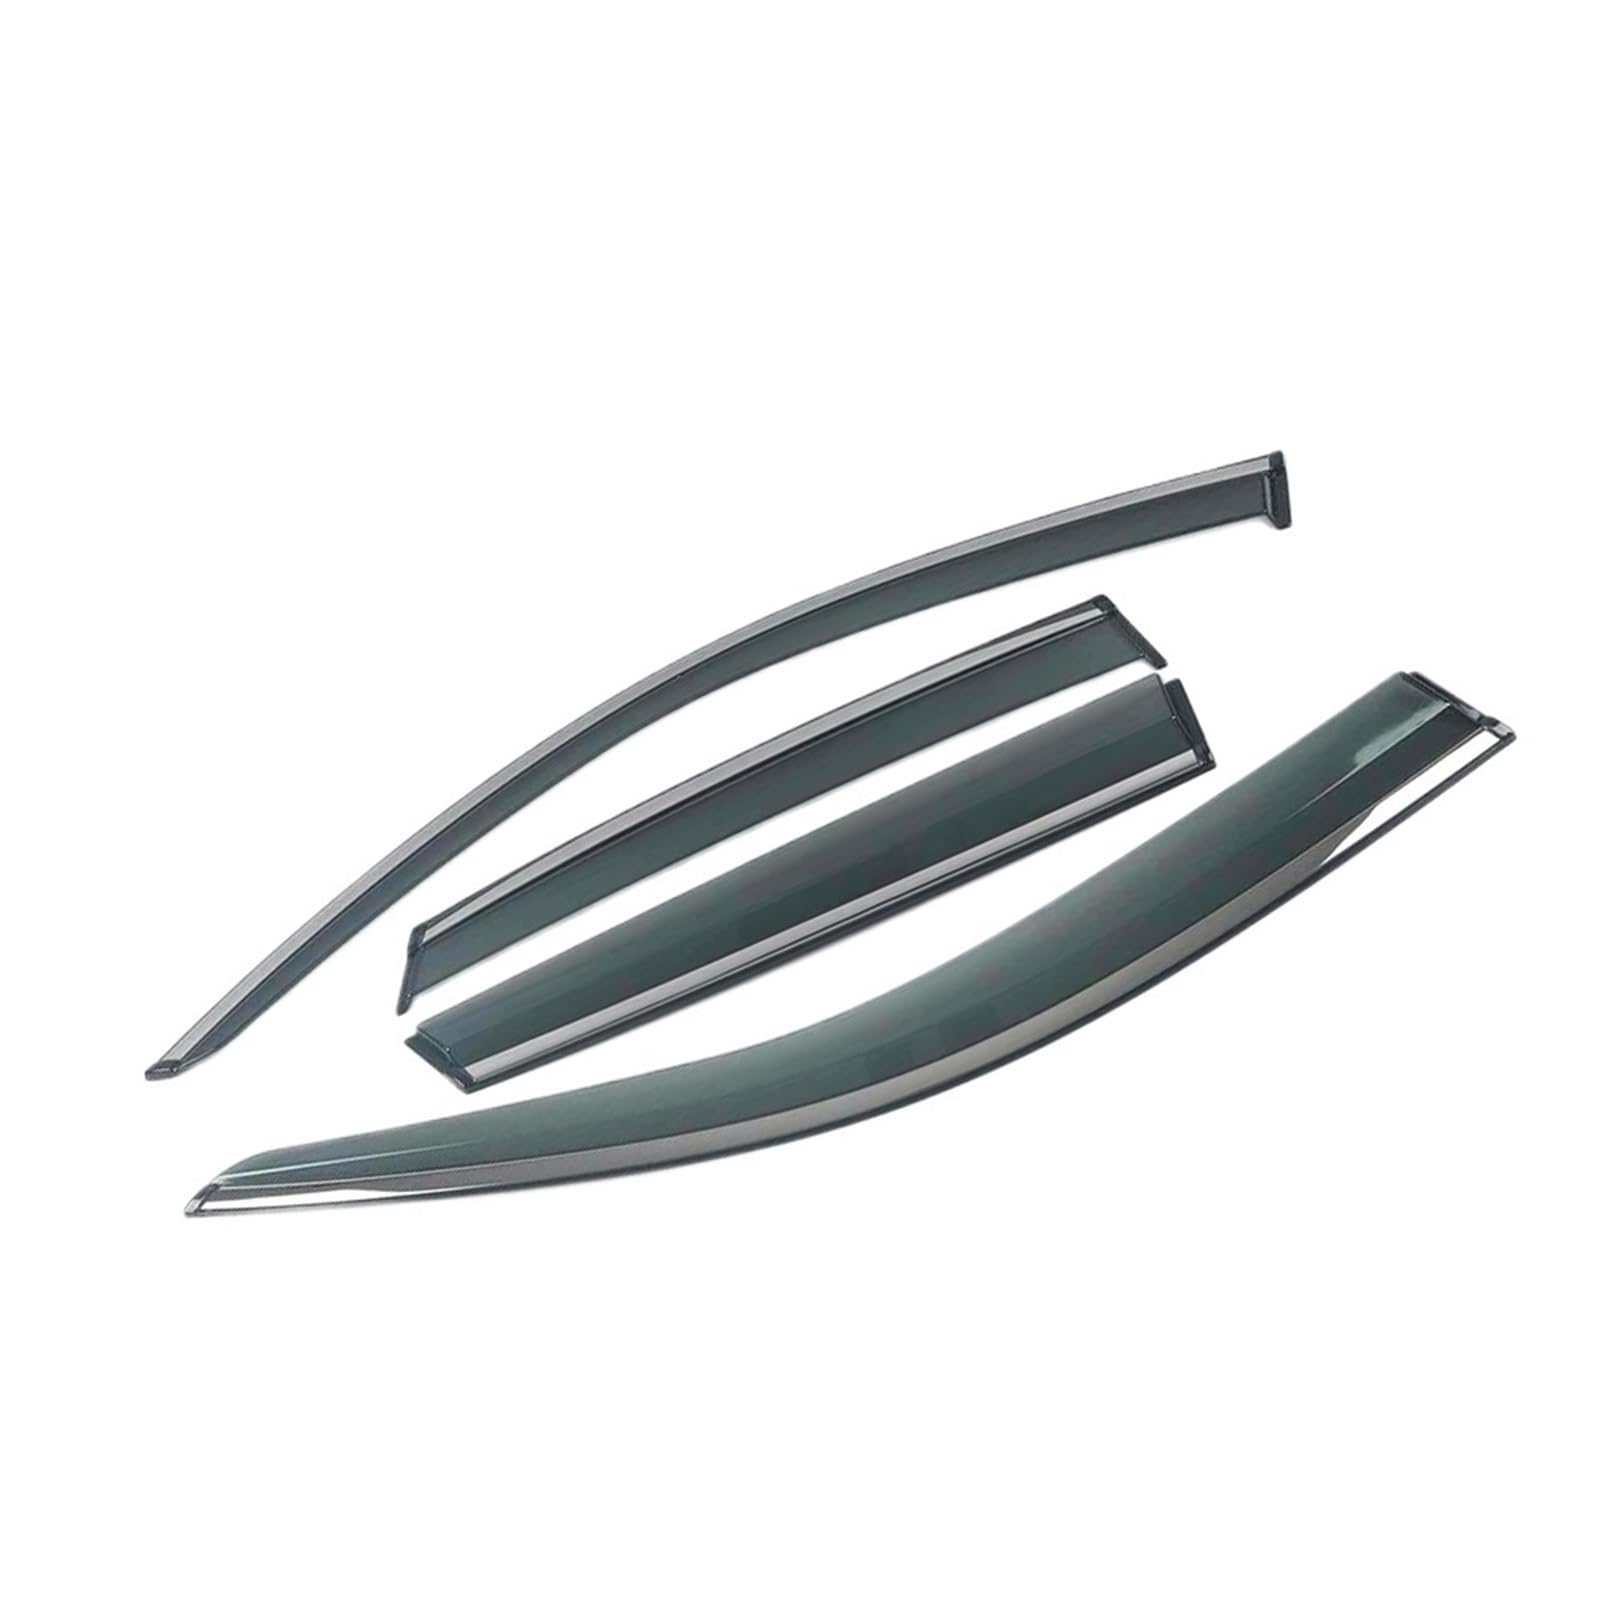 MUEOSI for Mercedes-Benz, GL 2006-2019 X164 Autofenster Sonnenschutz Regenschutz Visiere Schild Schutz Deflektor Abdeckung Zierrahmen Aufkleber Windabweiser-Set(for GL GLS 2013-2019) von MUEOSI